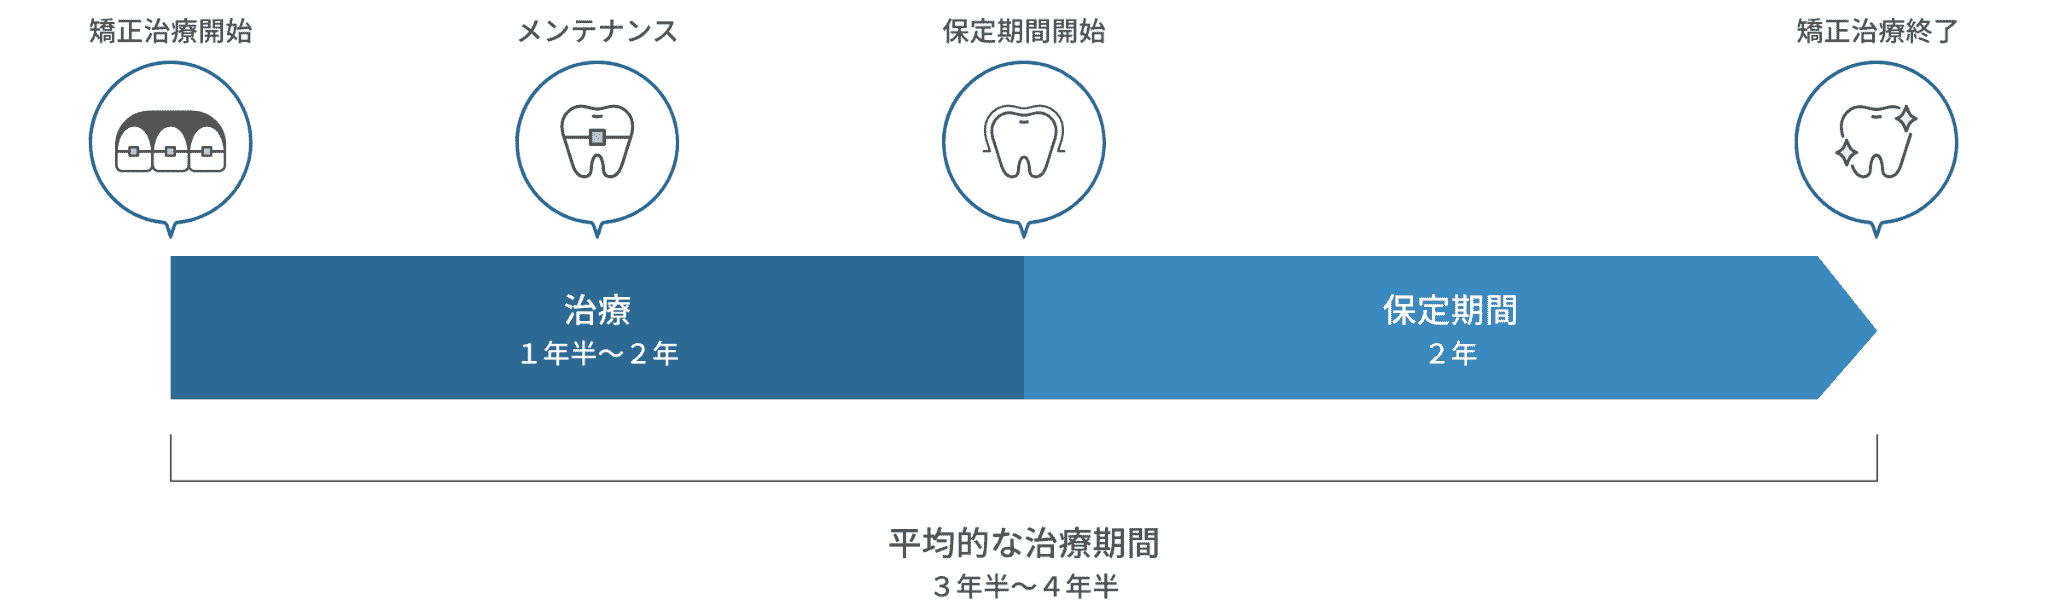 矯正歯科治療の期間